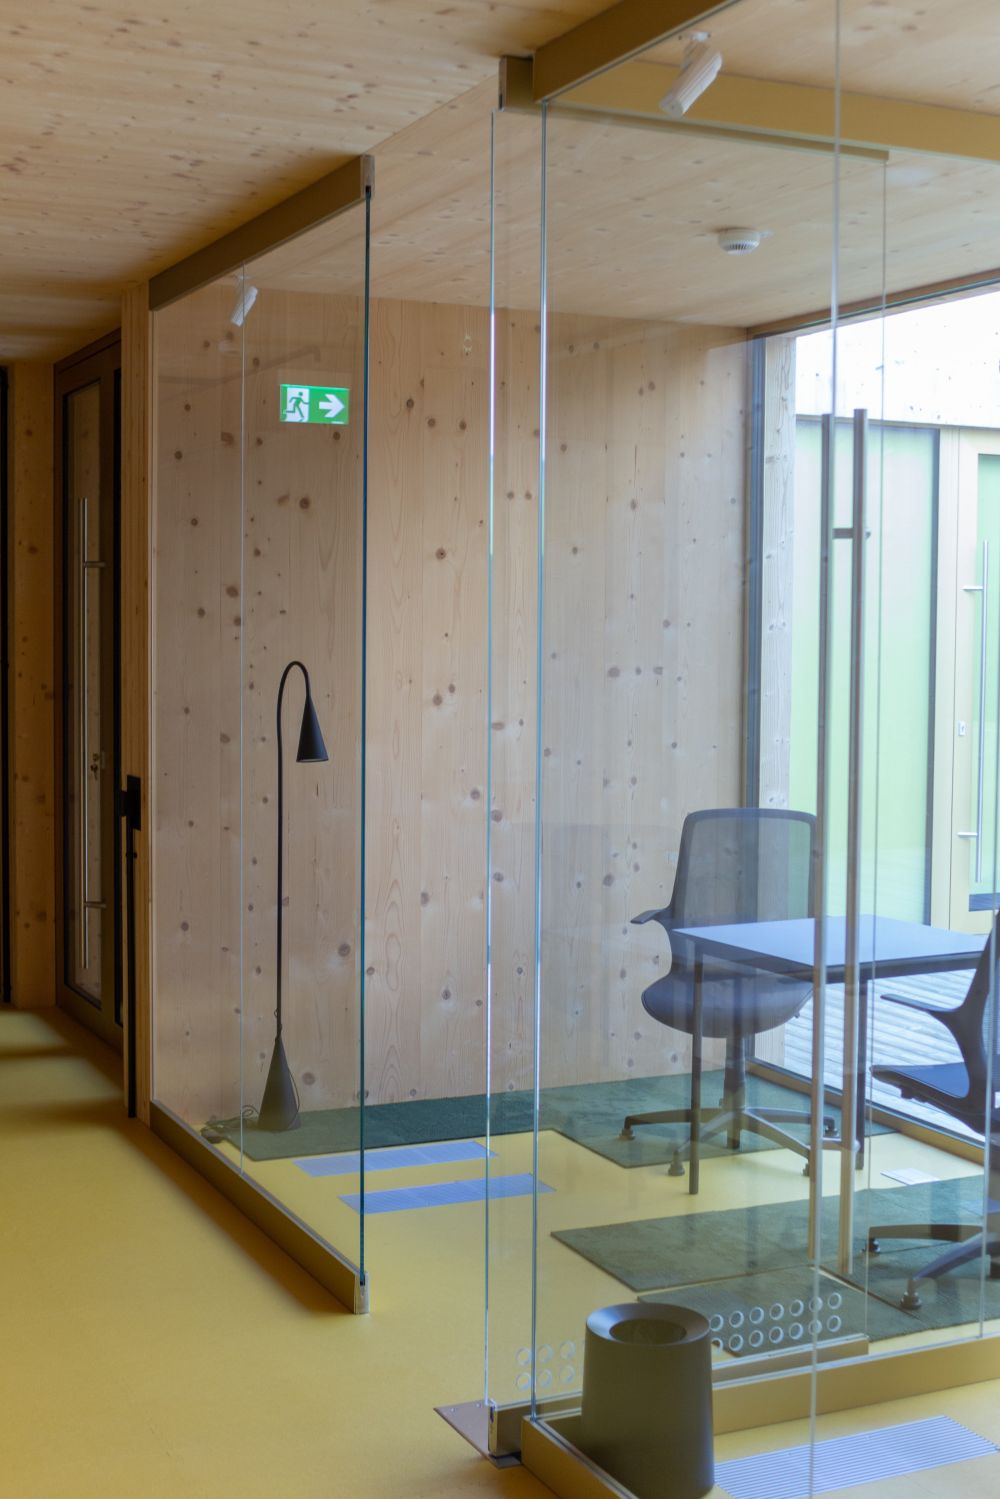 Lad en glarmester i København montere glasvægge i mødelokalerne